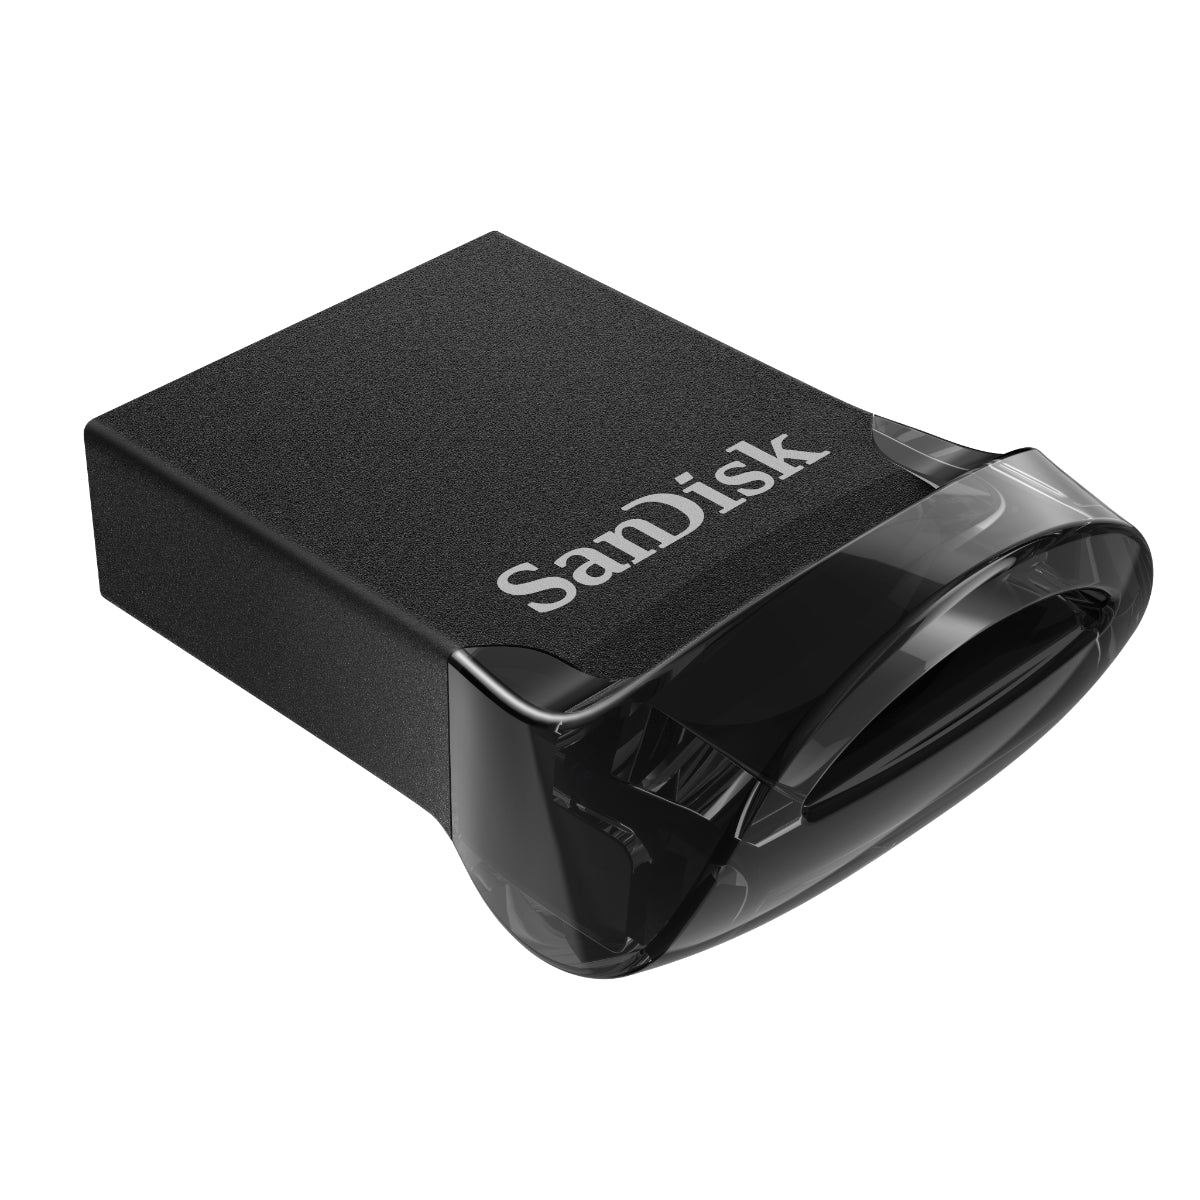 זיכרון נייד SanDisk Ultra Fit Z430 128GB